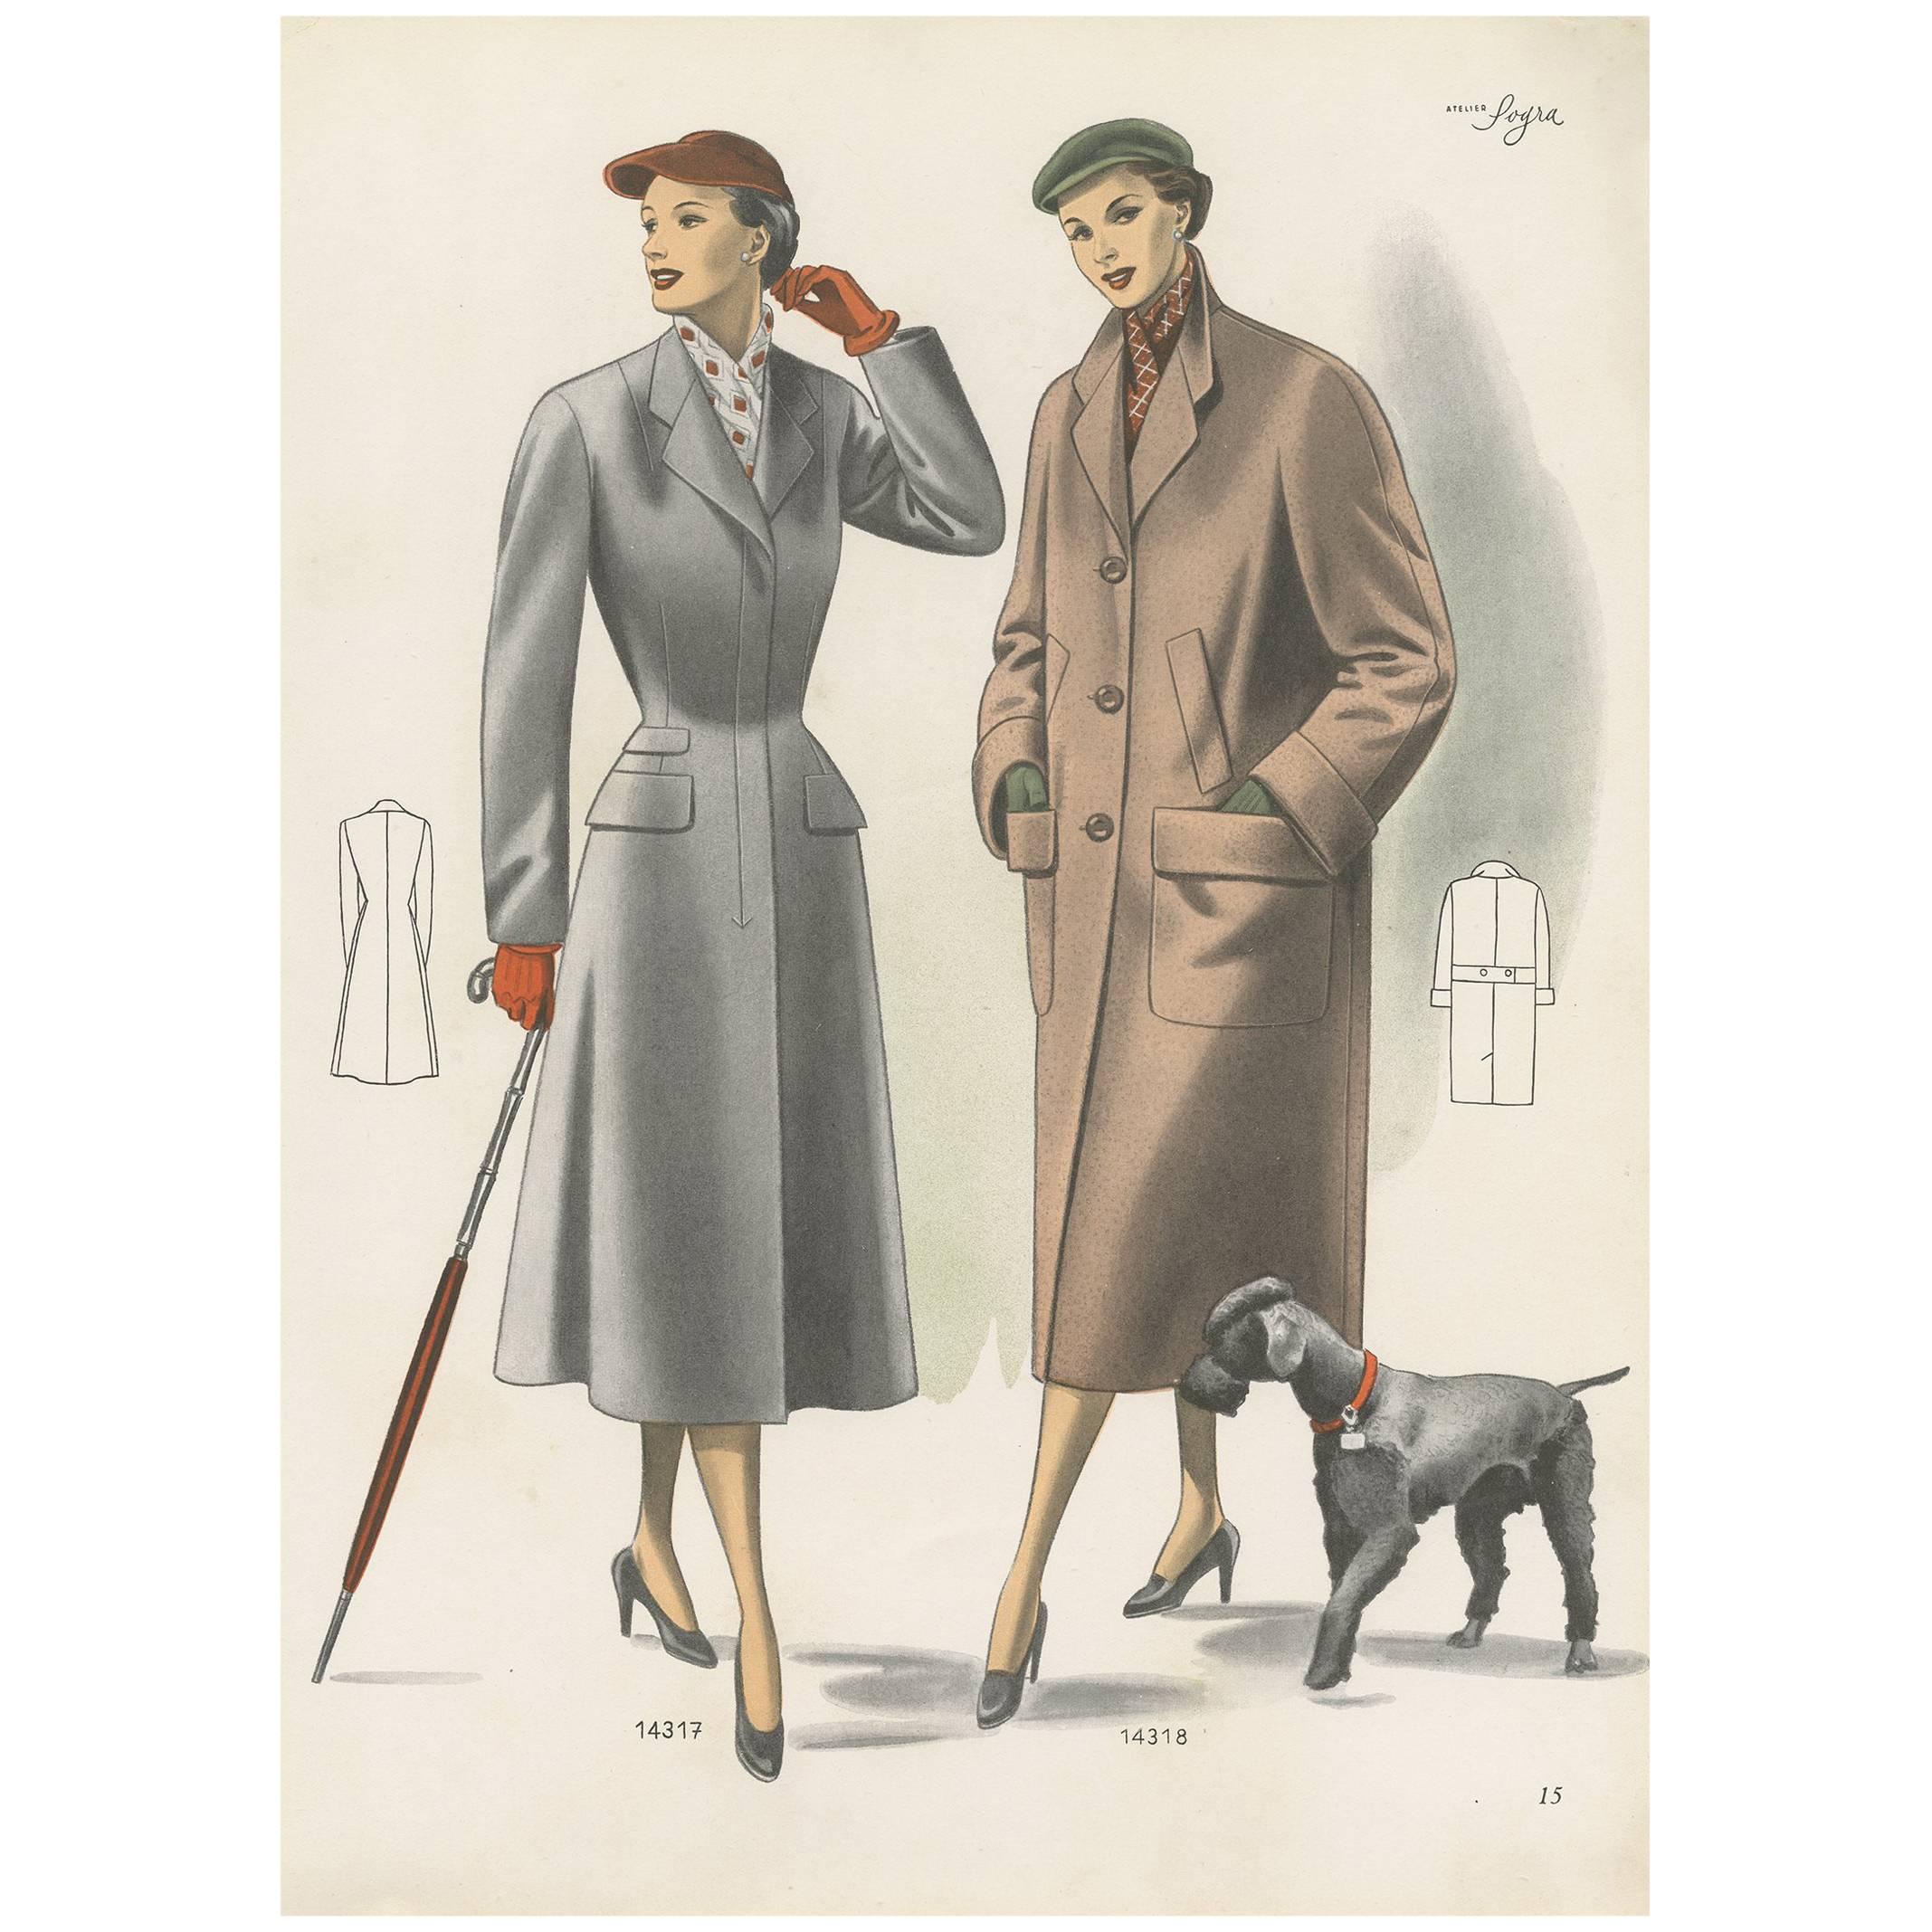 Affiche de mode vintage « pp. 14317 » publiée dans Ladies Styles, 1952